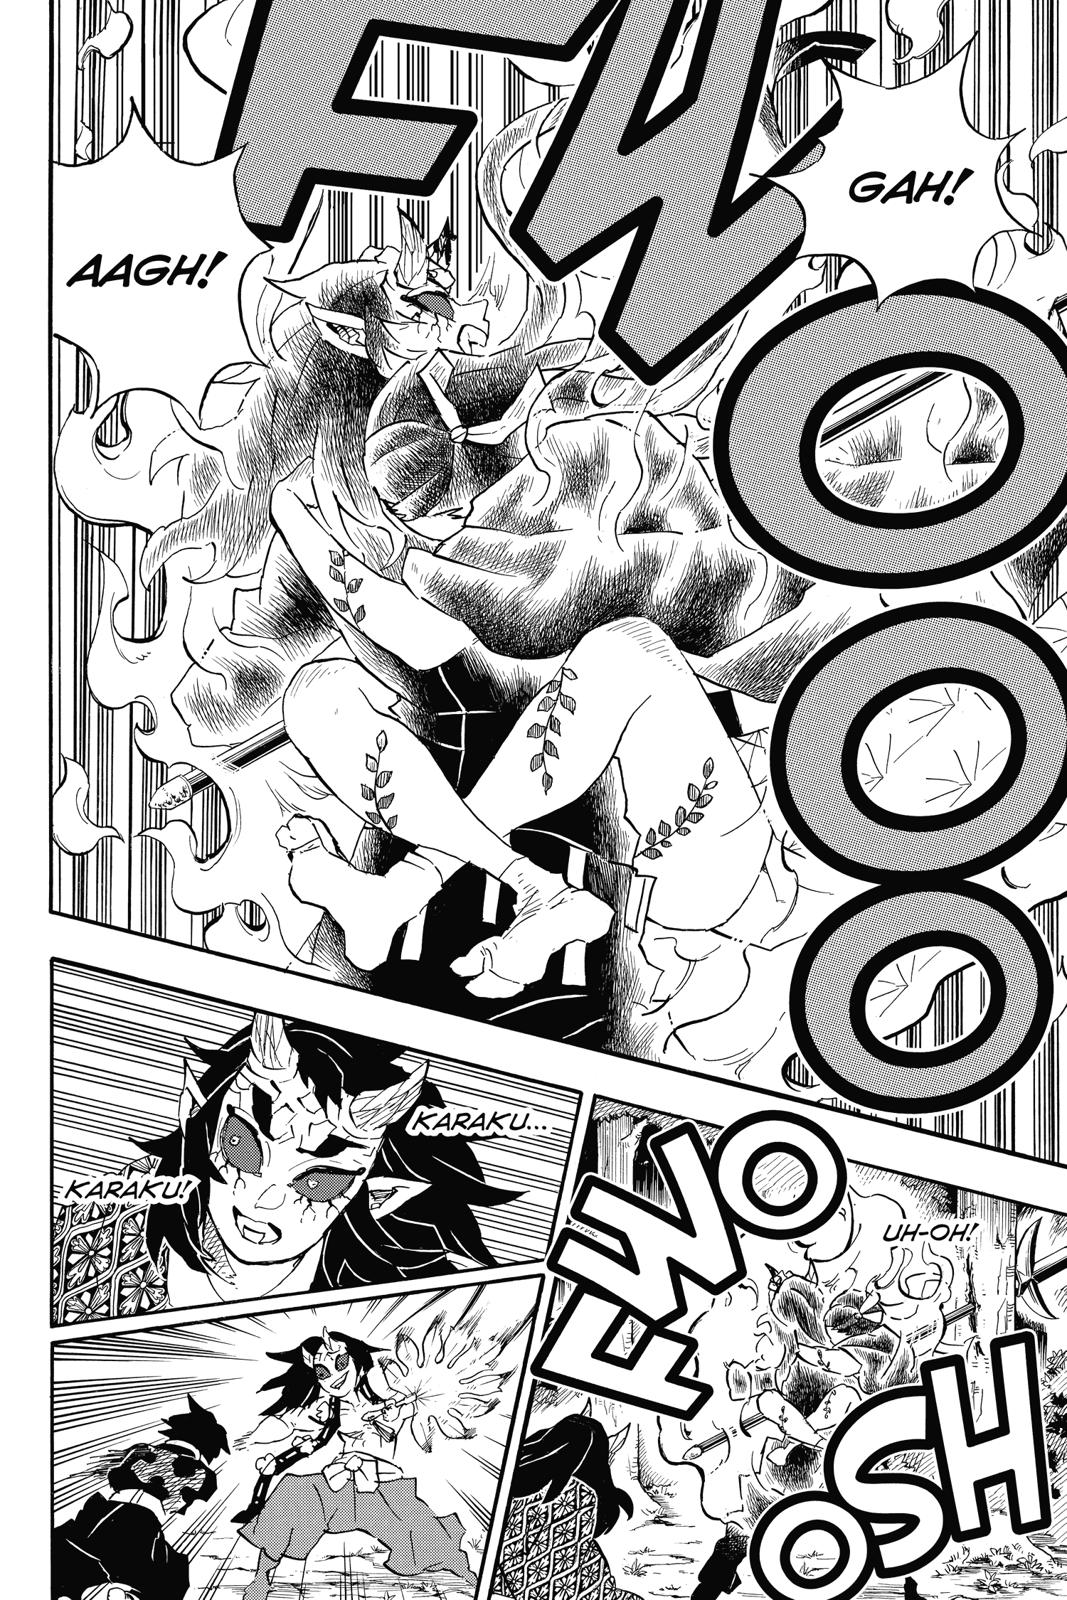 Demon Slayer Manga Manga Chapter - 114 - image 8